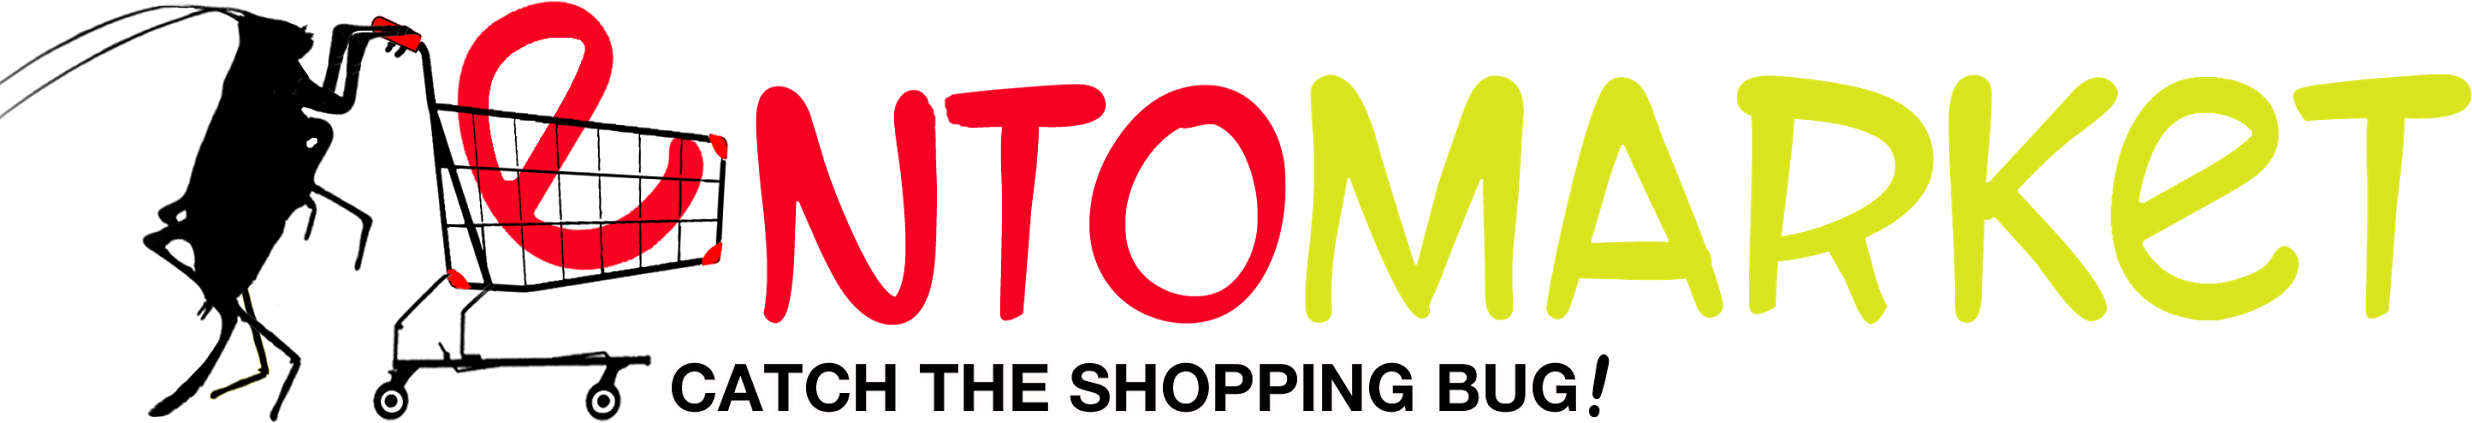 EntoMarket Logo